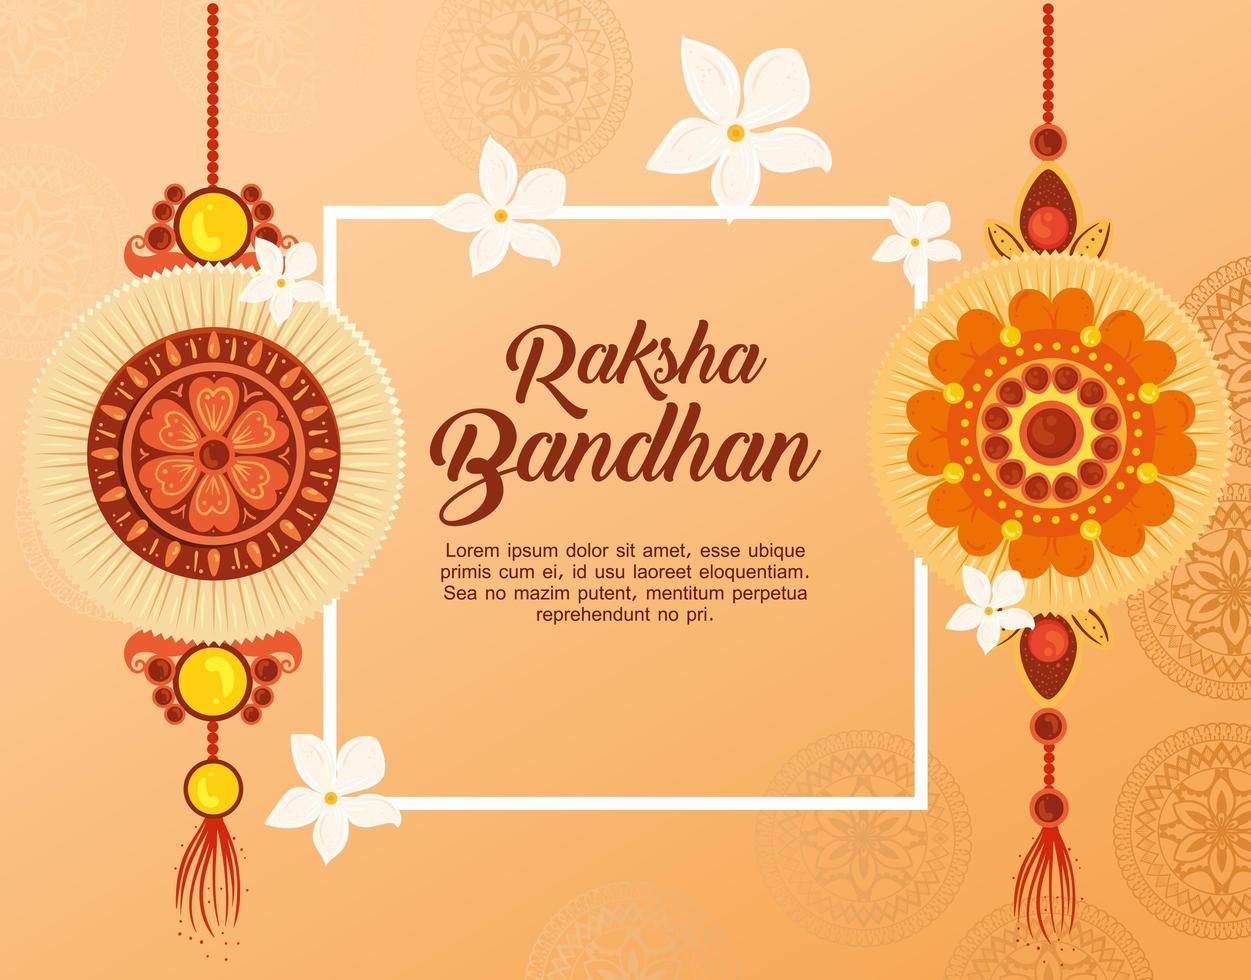 cartão comemorativo com conjunto decorativo de rakhi para raksha bandhan vetor